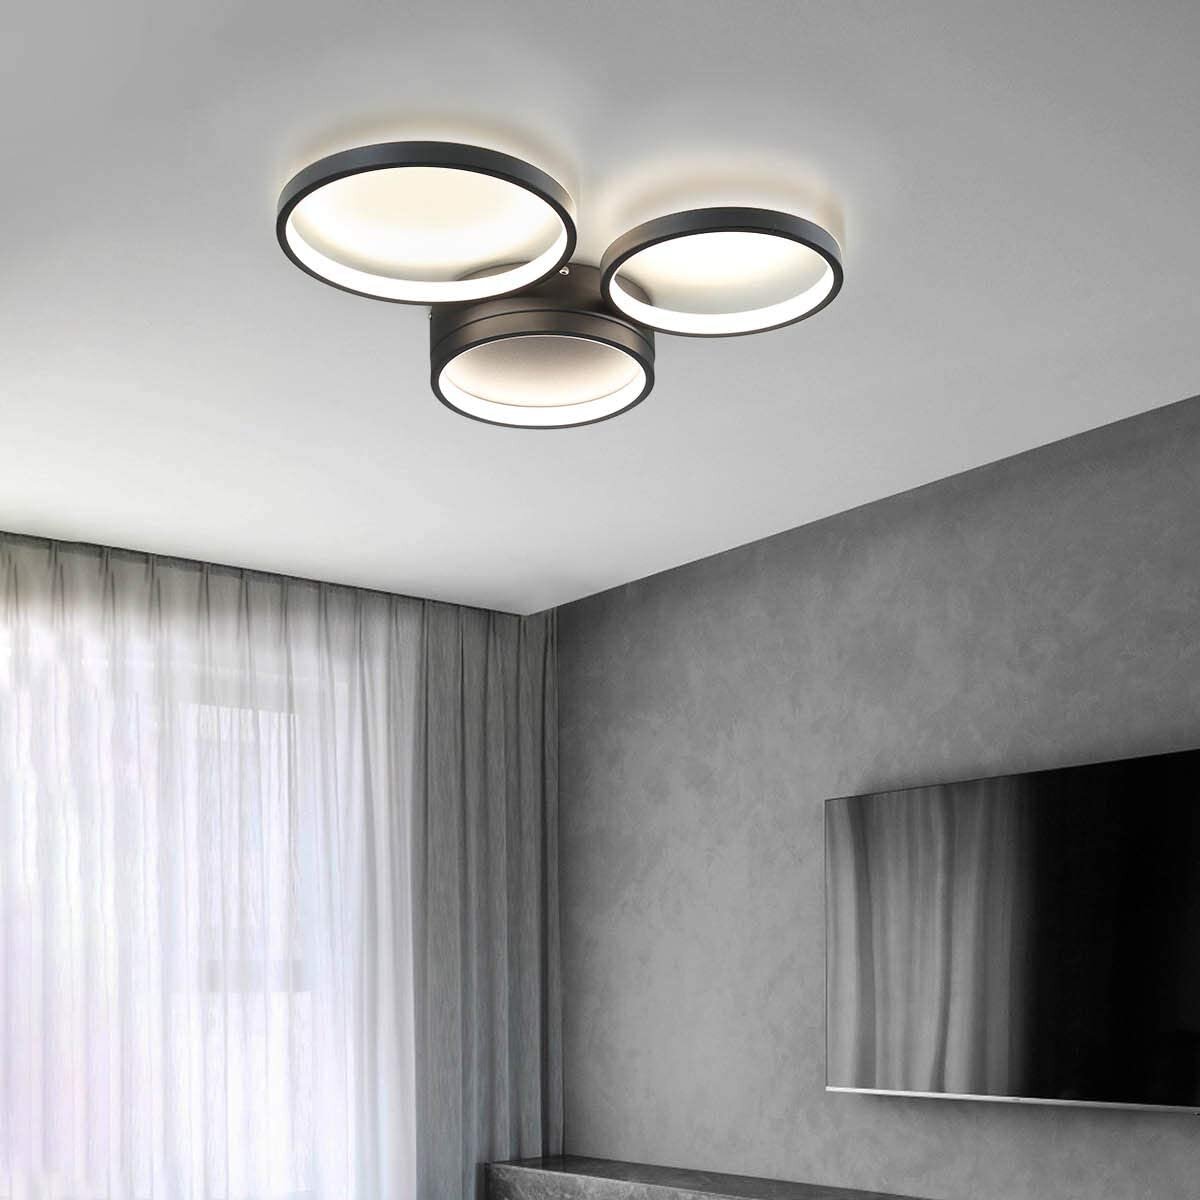 LED Decken Leuchte dimmbar Ring Design Wohn Zimmer Flur Lampe